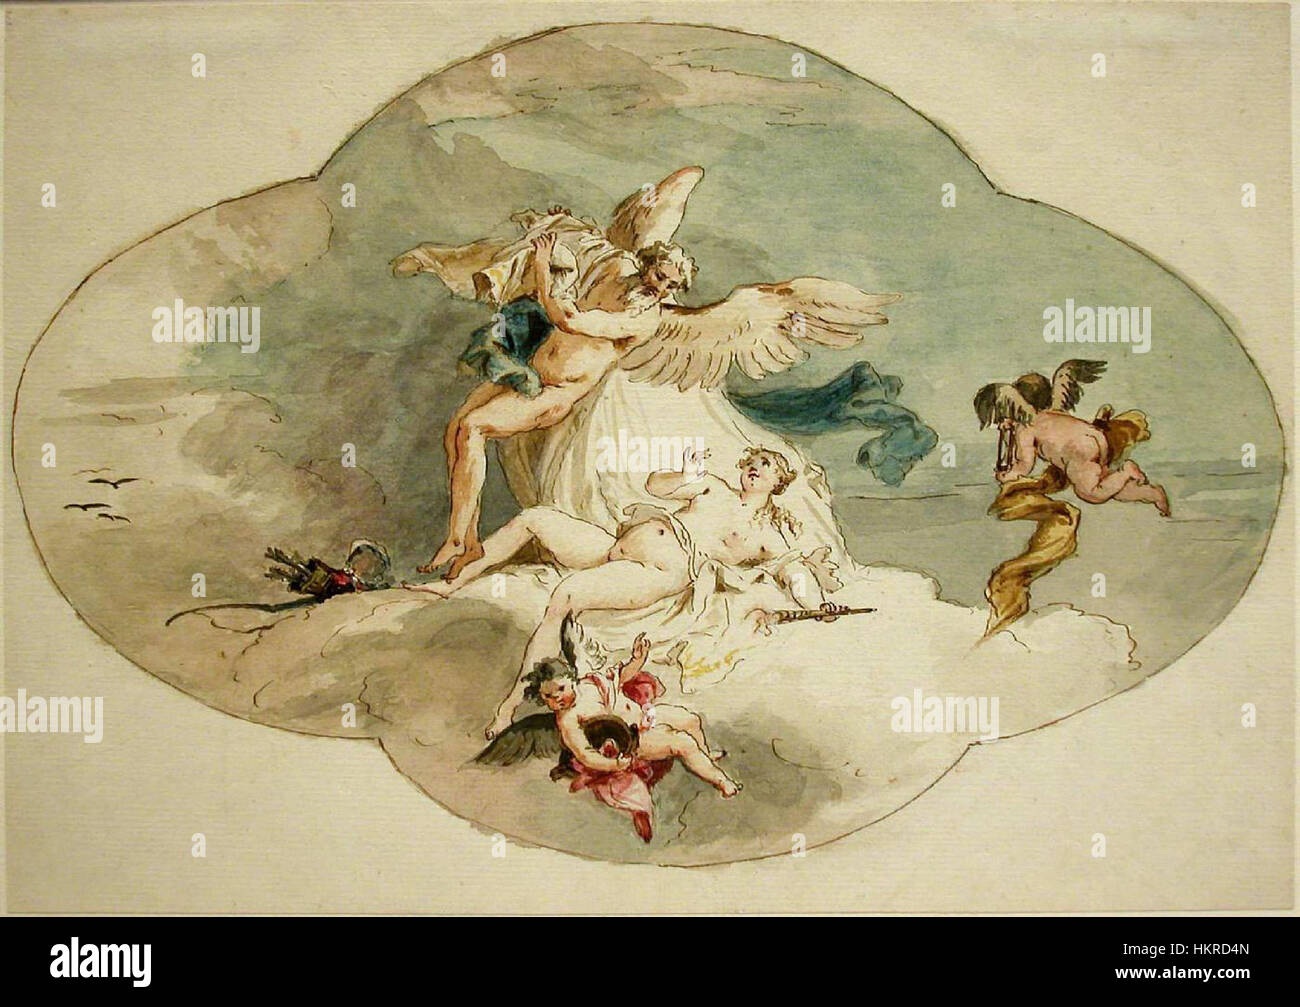 Cedini, Costantino - Chronos and Venus, Study for a Ceiling Fresco - 18th century Stock Photo